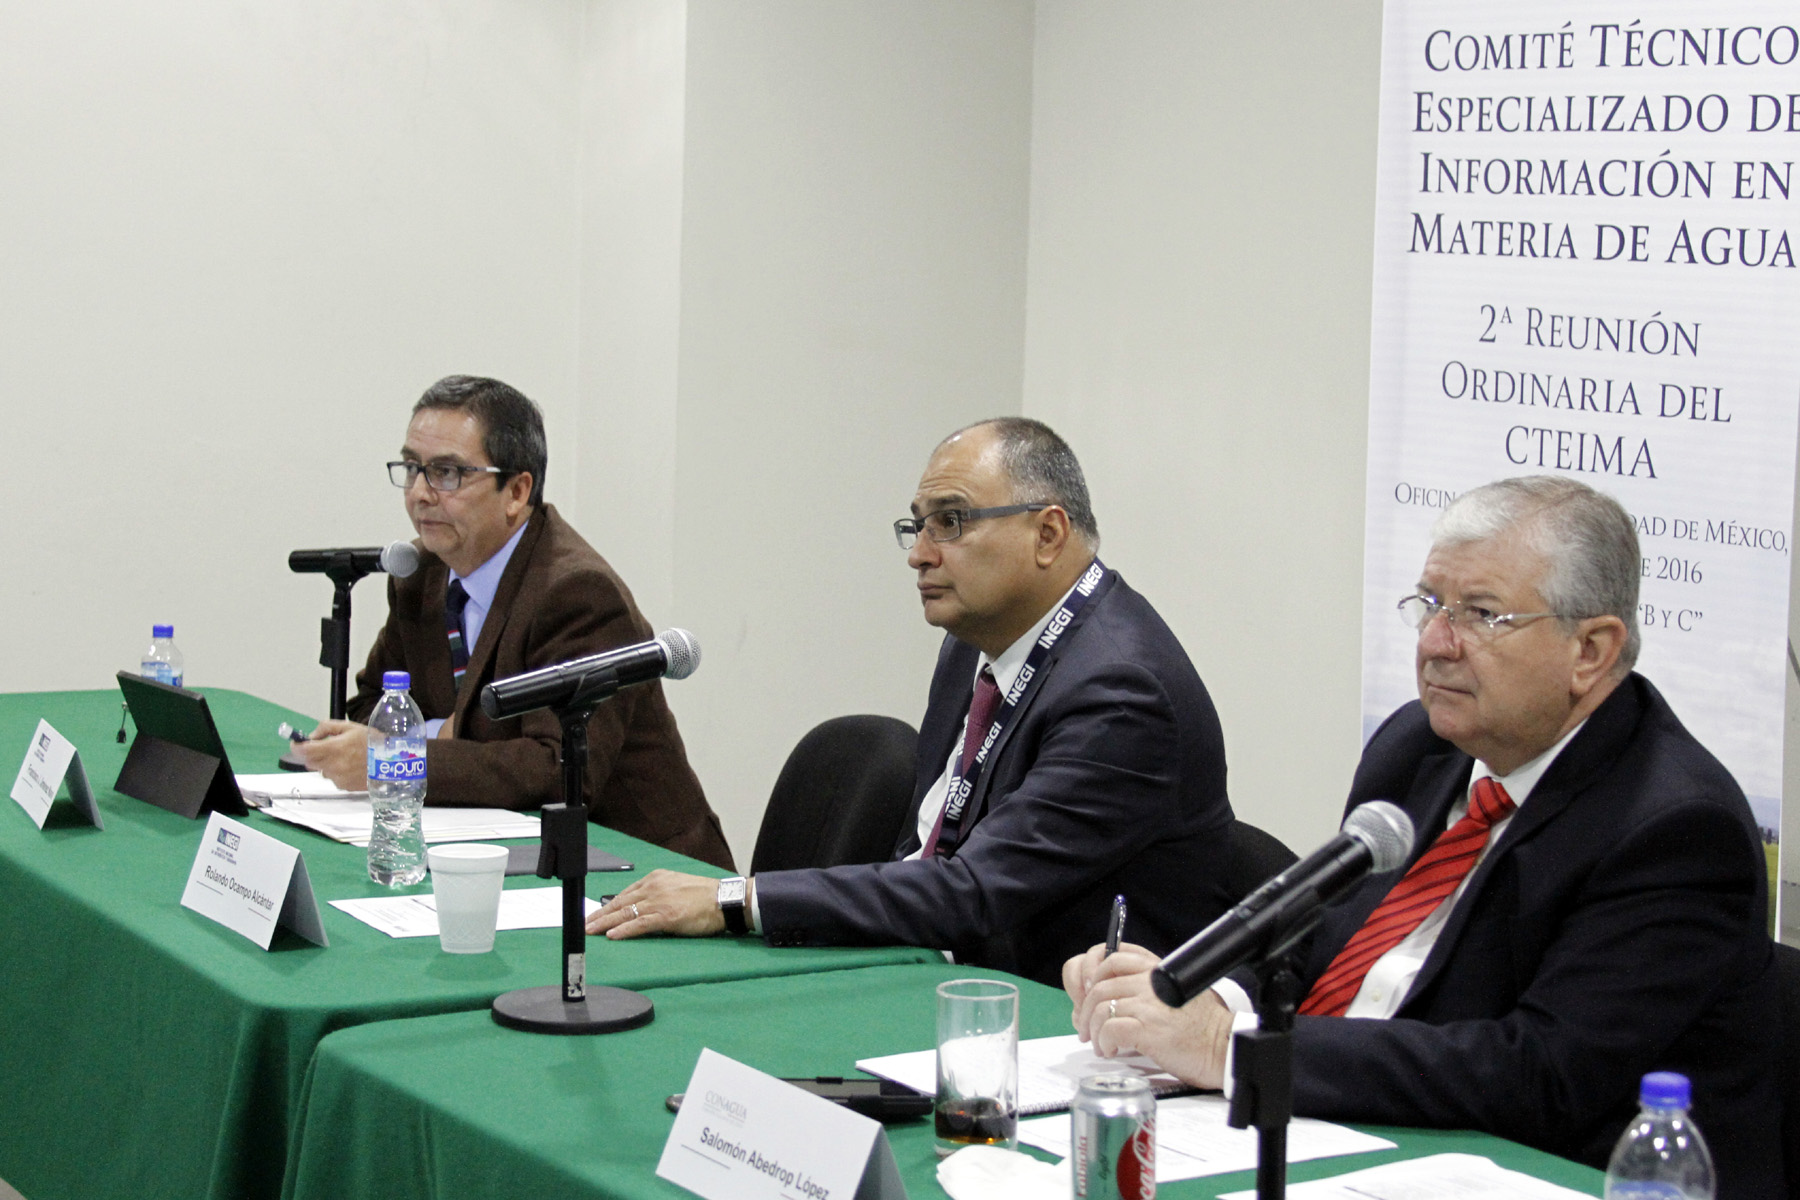  La Conagua y otras instituciones fortalecen la coordinación para unificar la información en materia hídrica